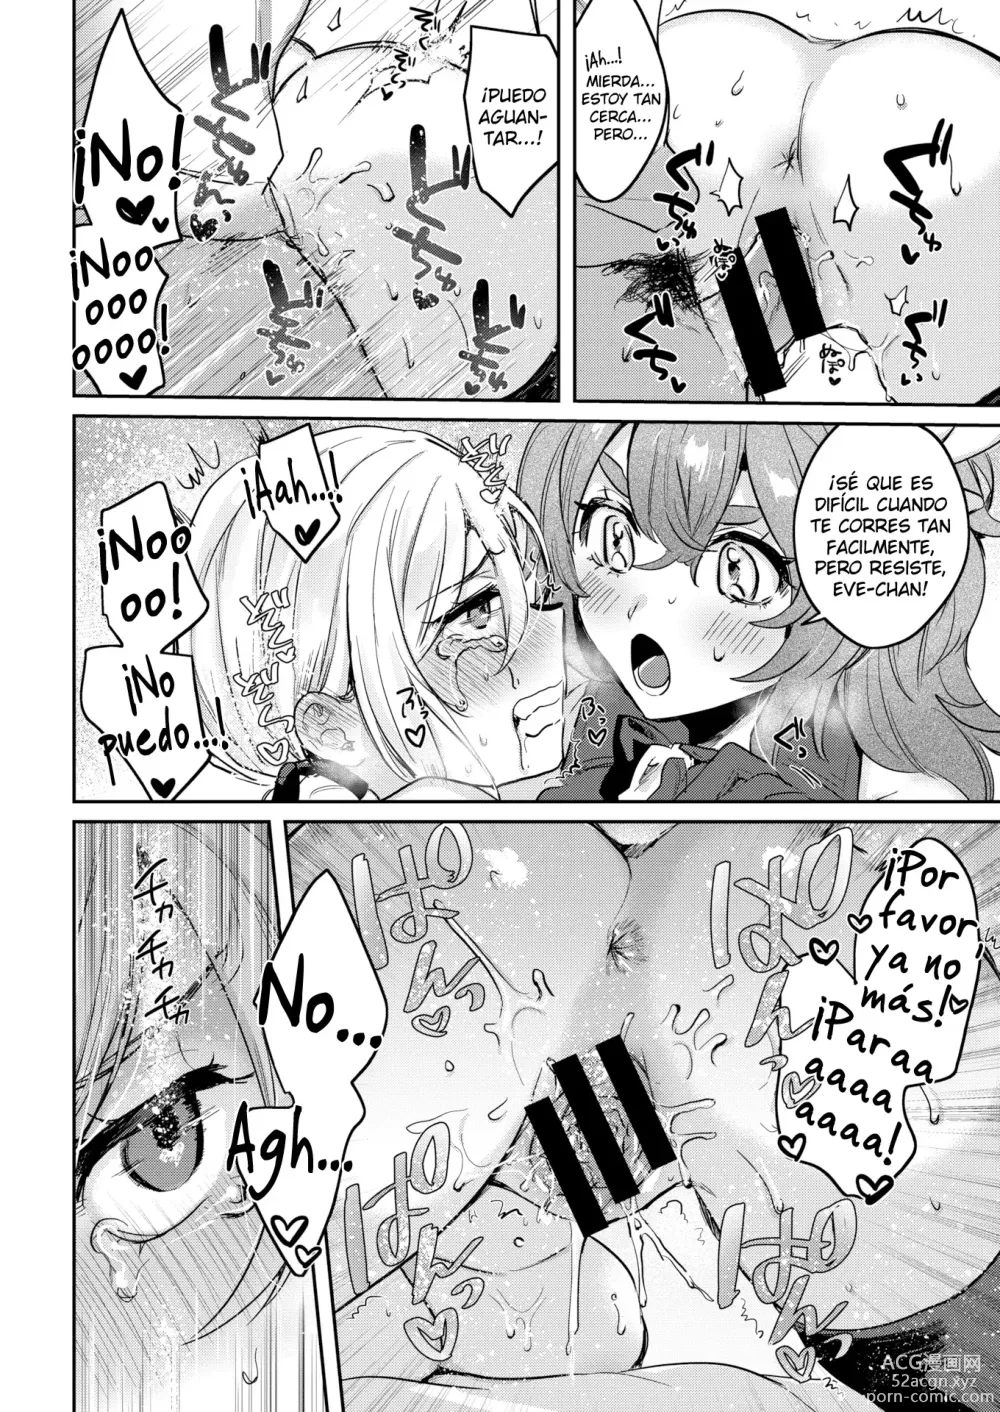 Page 19 of manga Santa claus atrasado